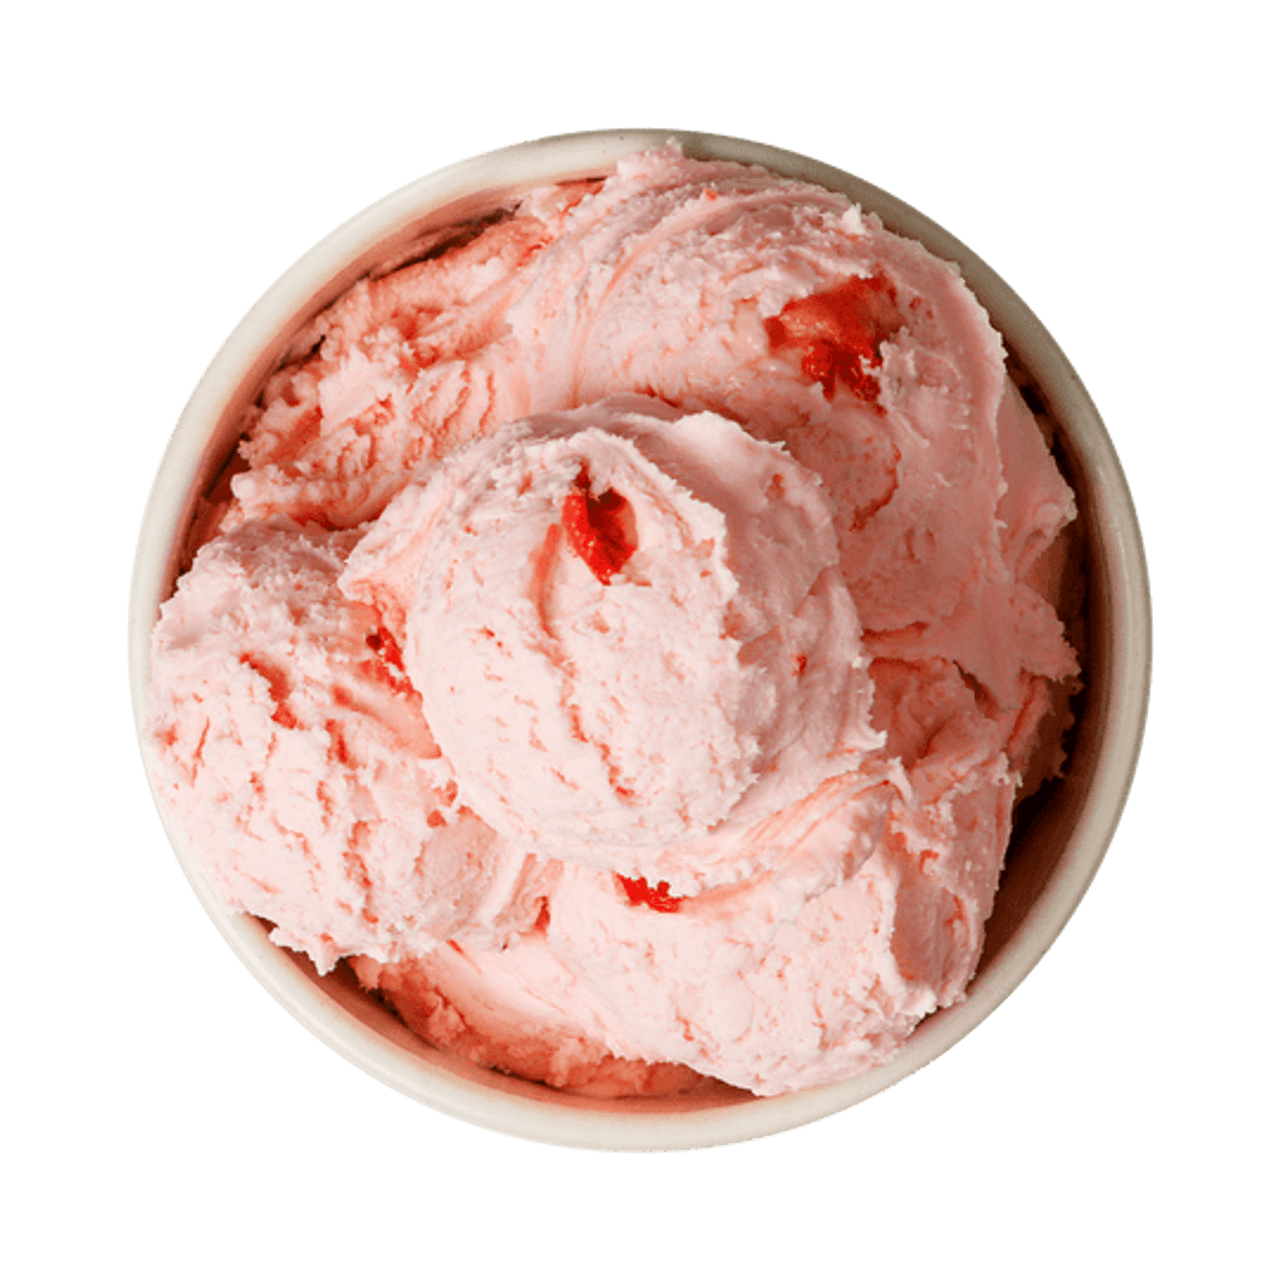 Get the Scoop - Order Ice Cream Online